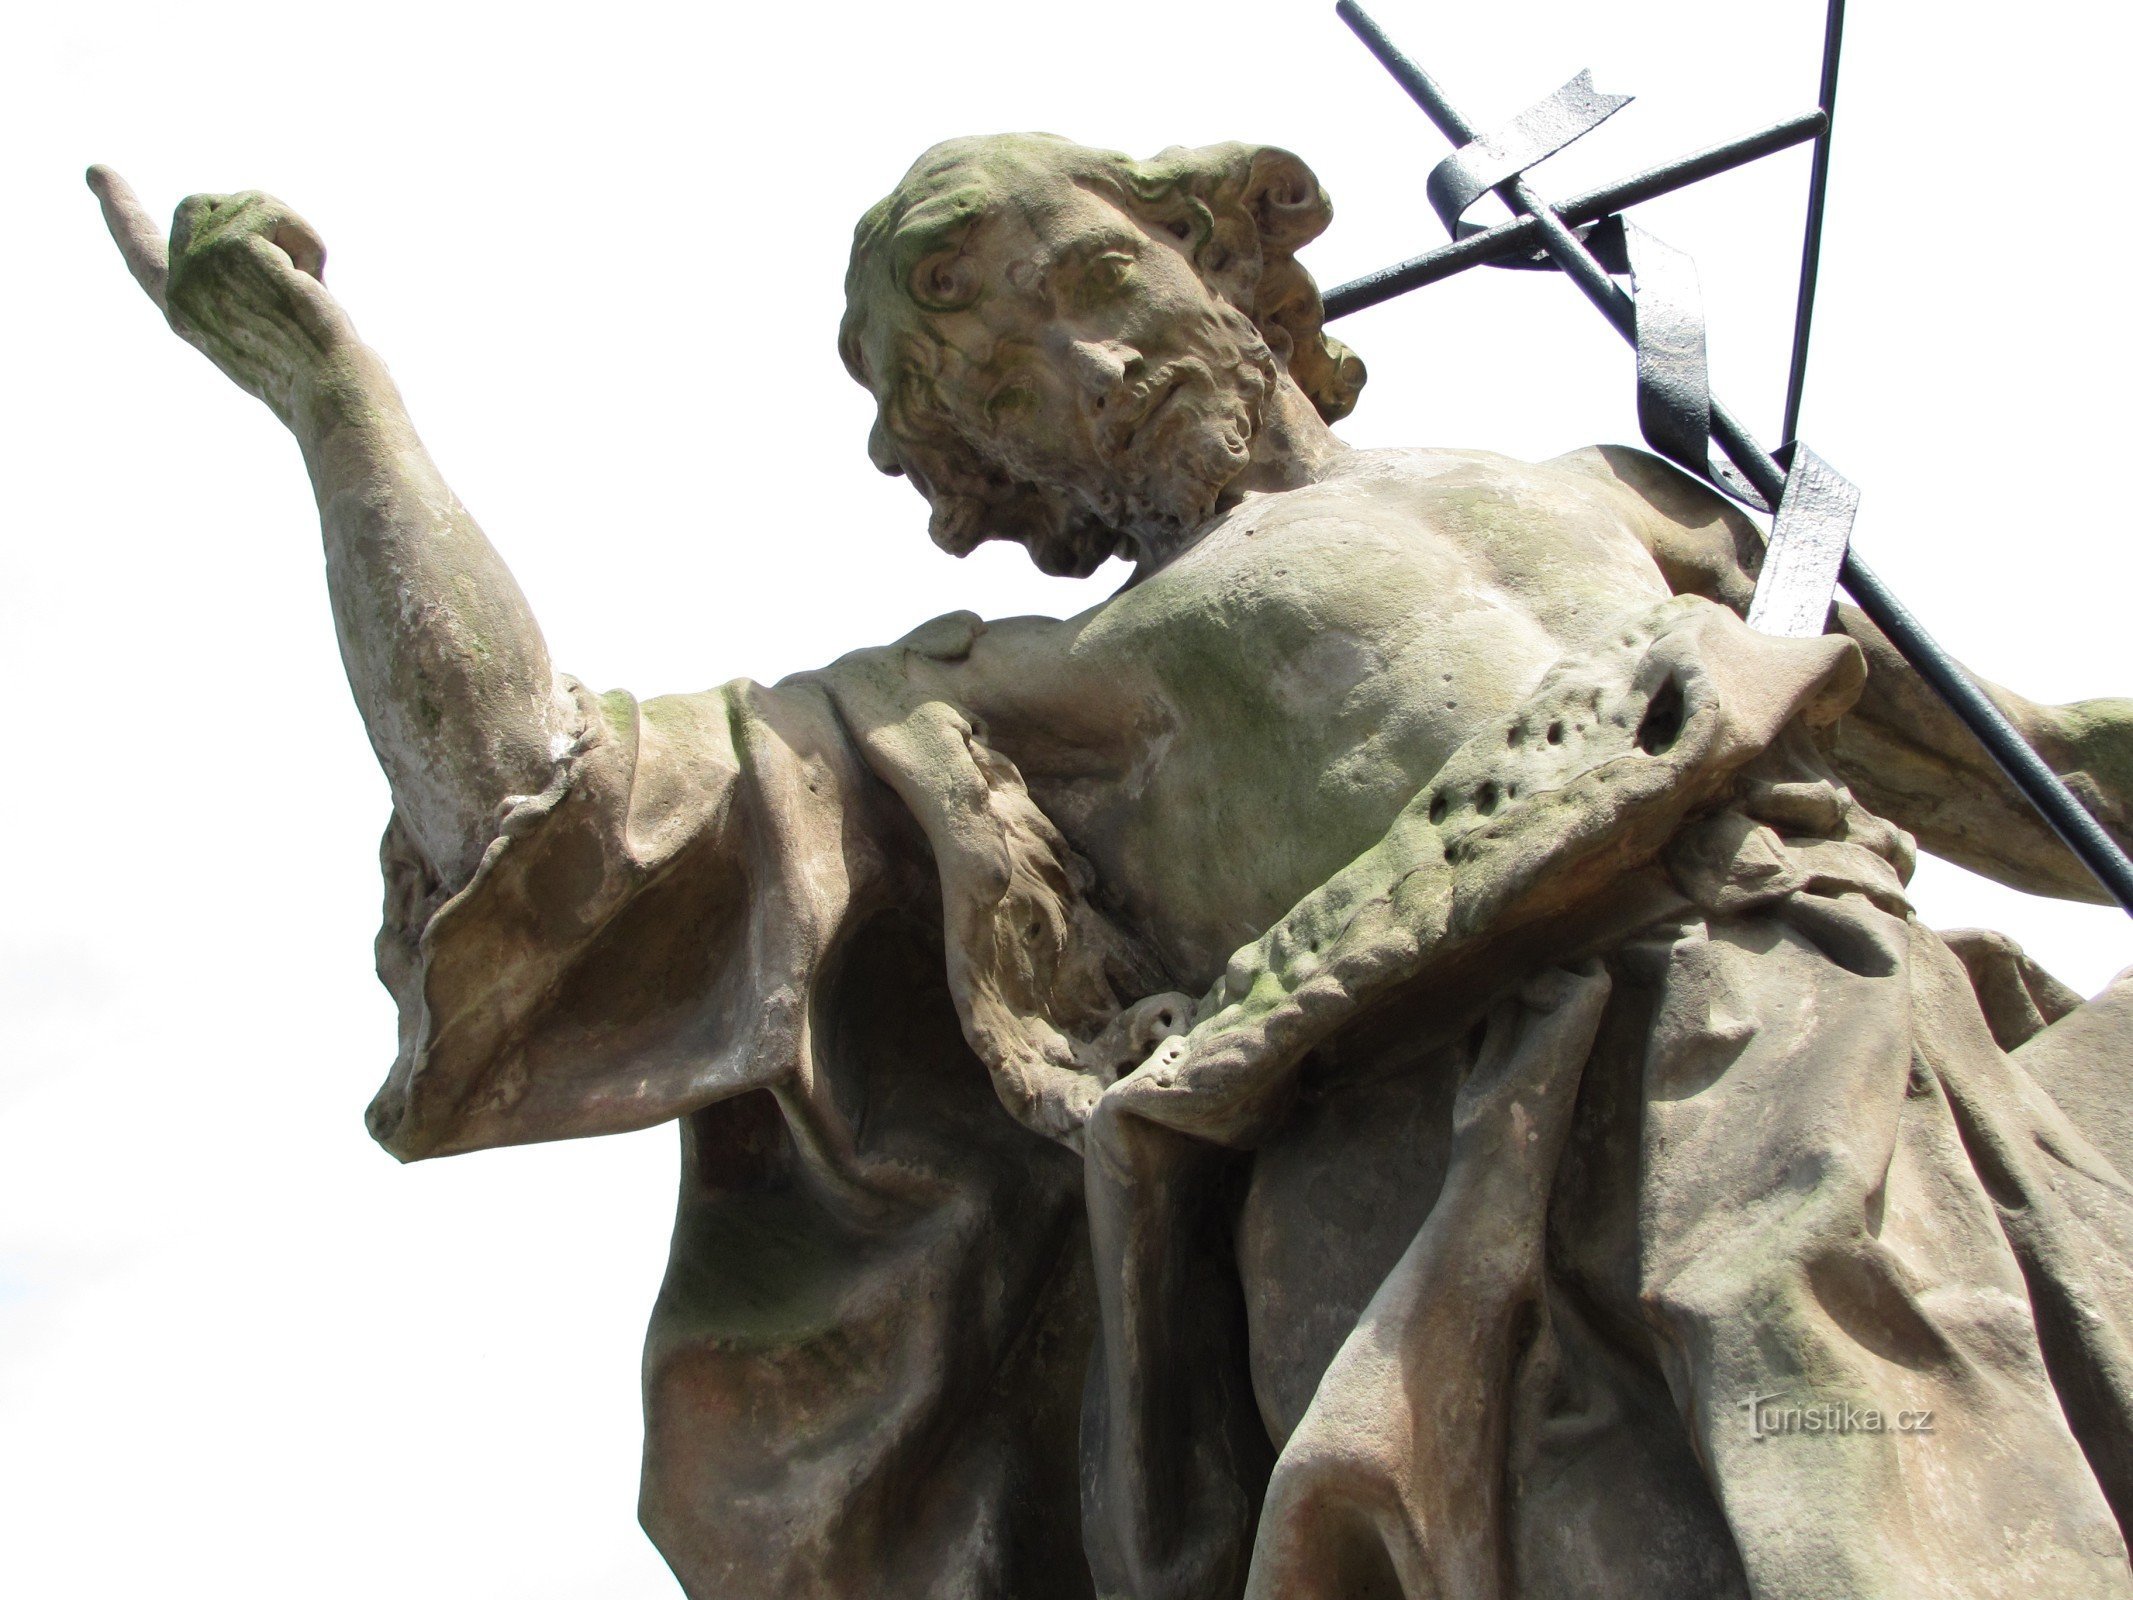 Митровице-у-Моравичан – статуя св. Иоанн Креститель (Ондржей Захнер)